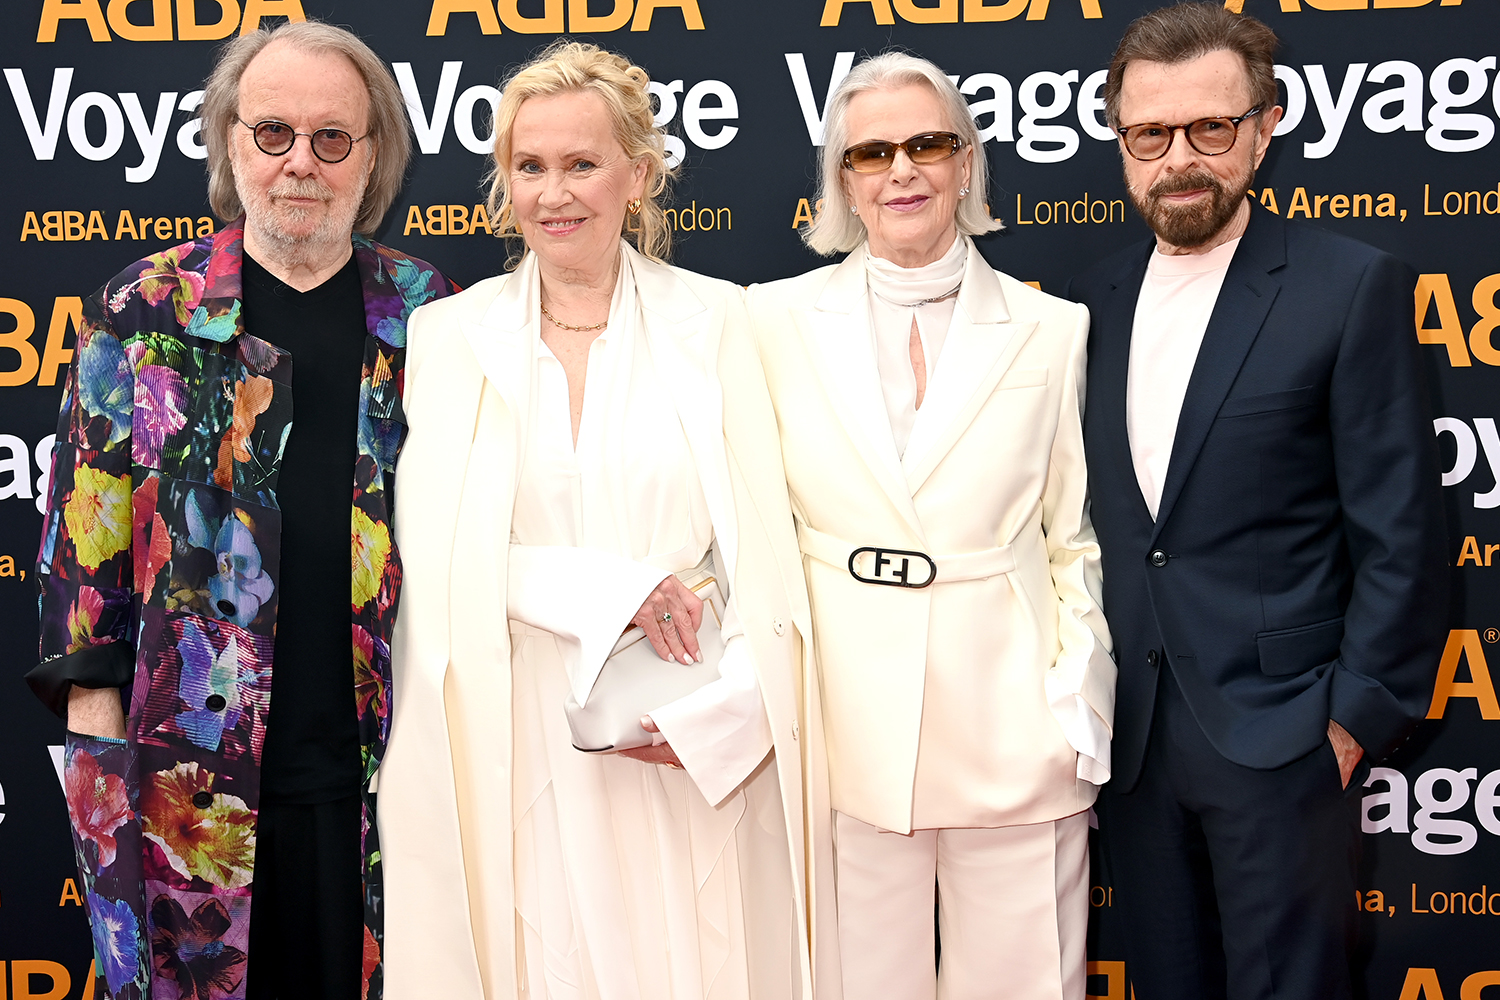 Lluvia de estrellas y royals para la histórica reunión de ABBA a 40 años de su separación